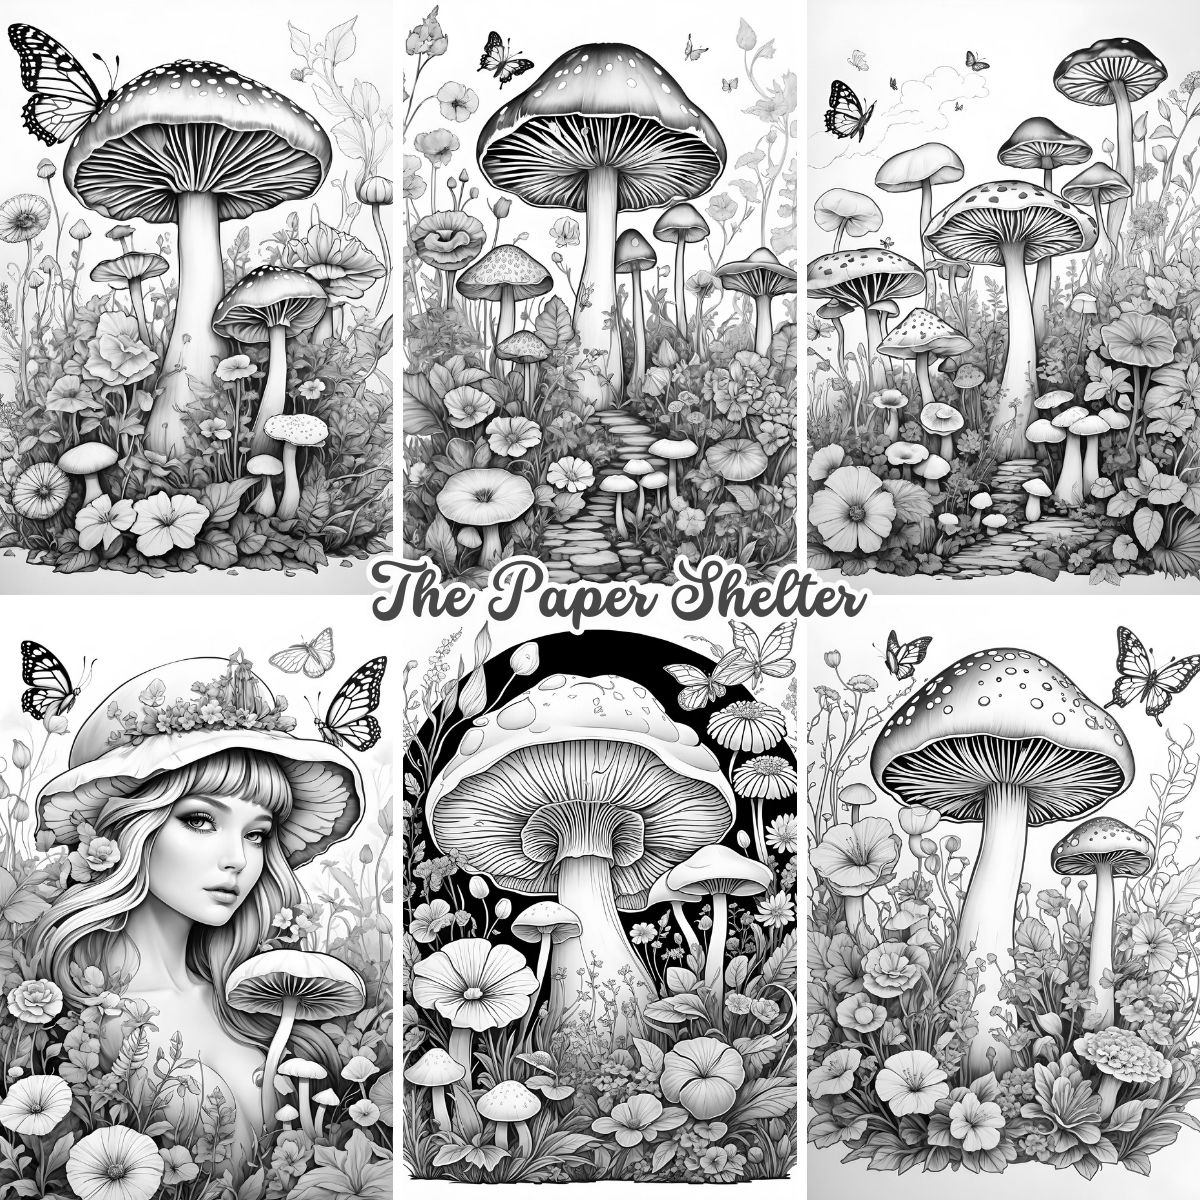 Mushroom Fantasy - Digital Coloring Book